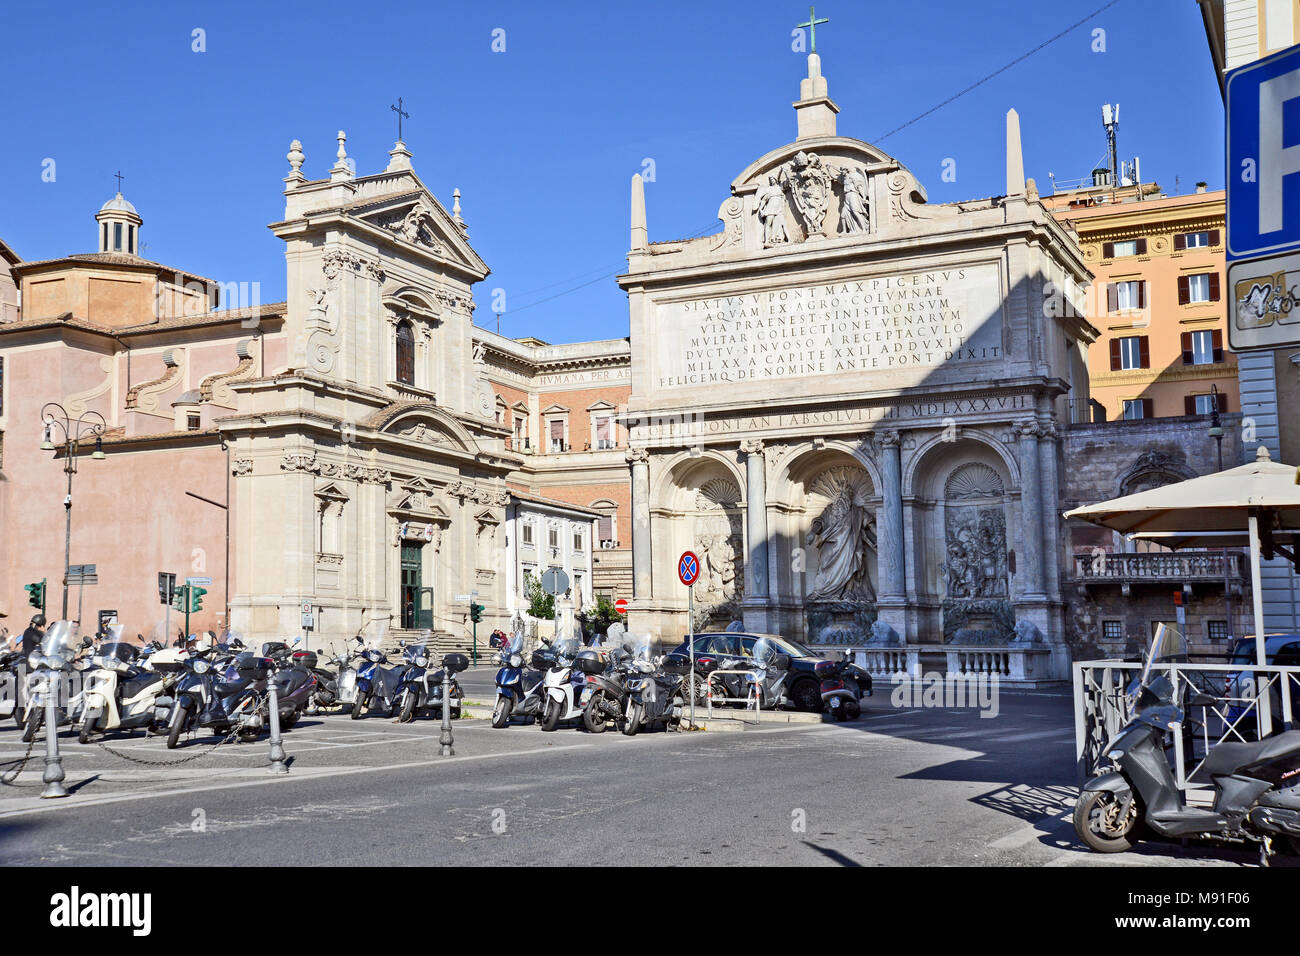 The Fontana dell'Acqua Felice and the church of Santa Maria della Vittoria in the Quirinale District of Rome, Italy Stock Photo